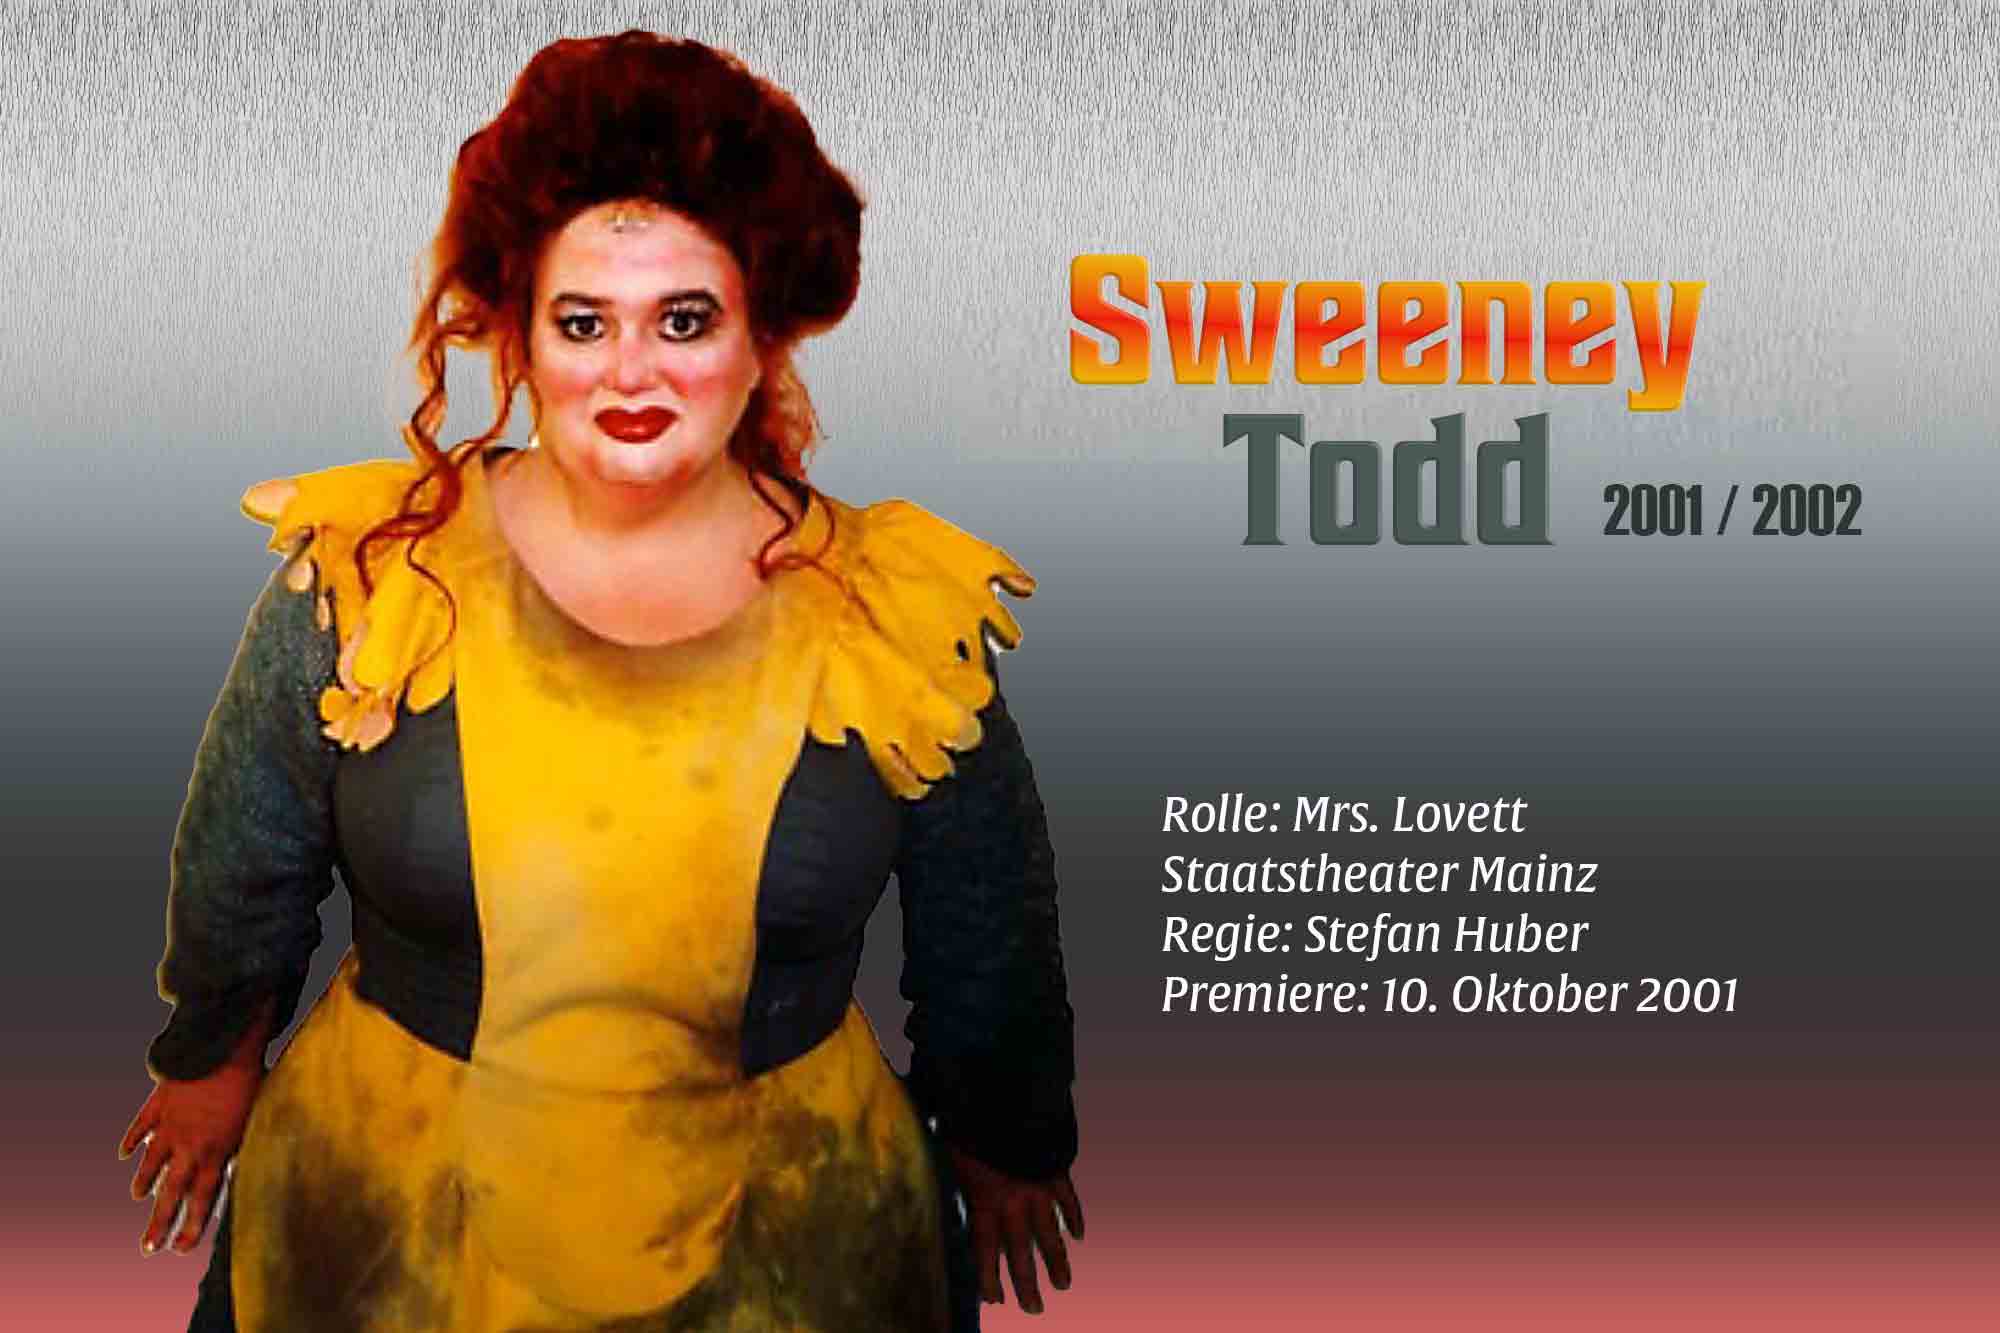 Sweeney todd